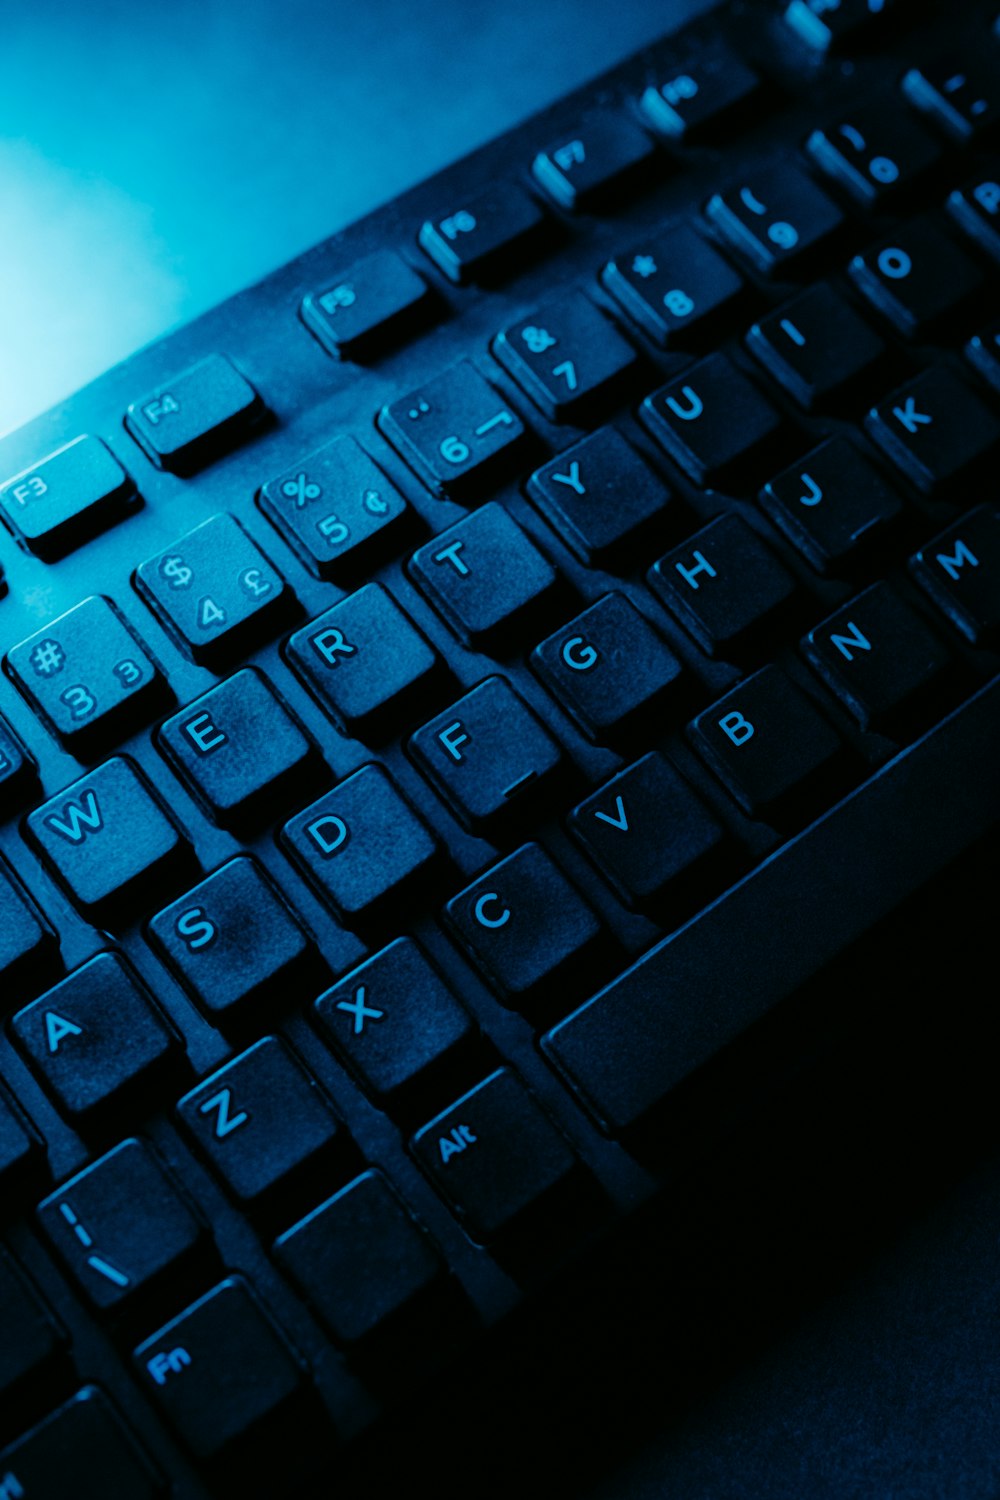 Foto Um close up de um teclado – Imagem de Computador grátis no Unsplash